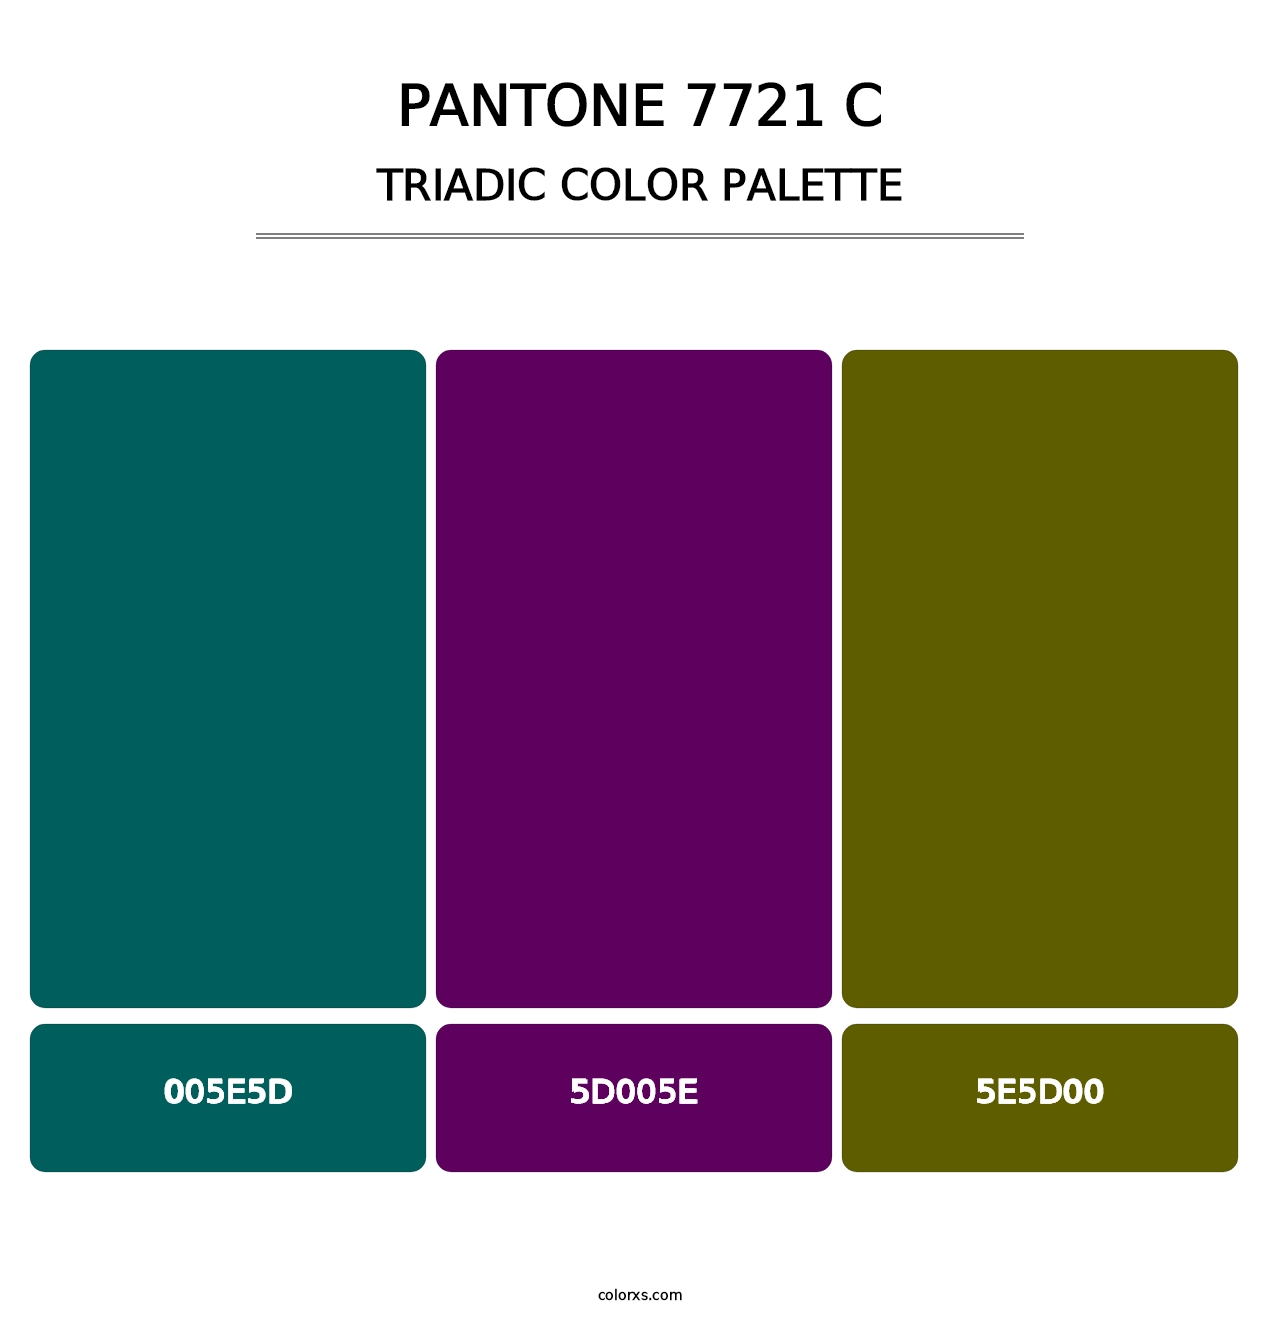 PANTONE 7721 C - Triadic Color Palette